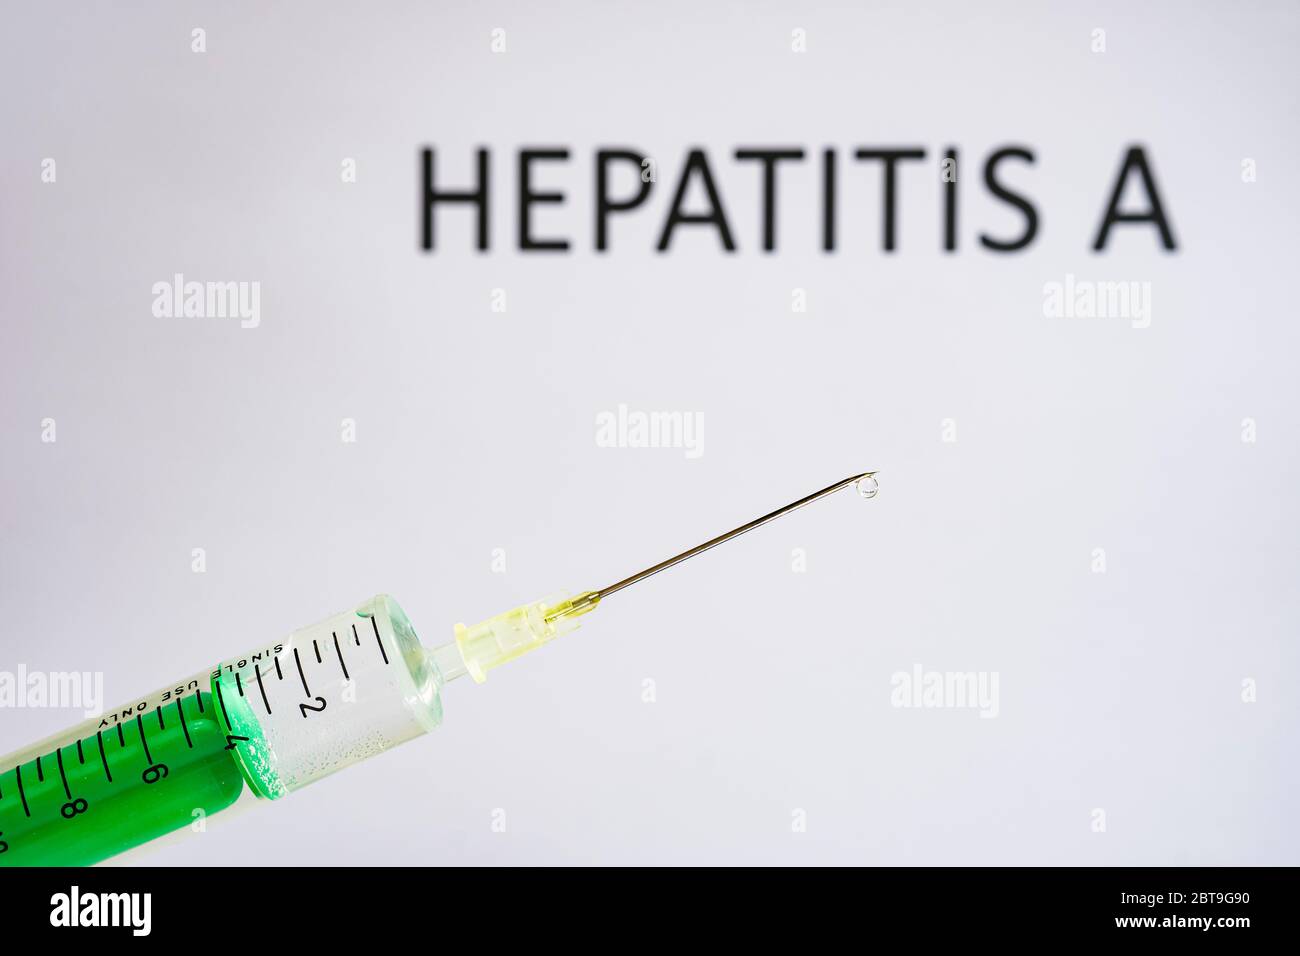 Questa figura mostra una siringa monouso con ago ipodermico, HEPATITIS A scritta su una lavagna bianca dietro Foto Stock